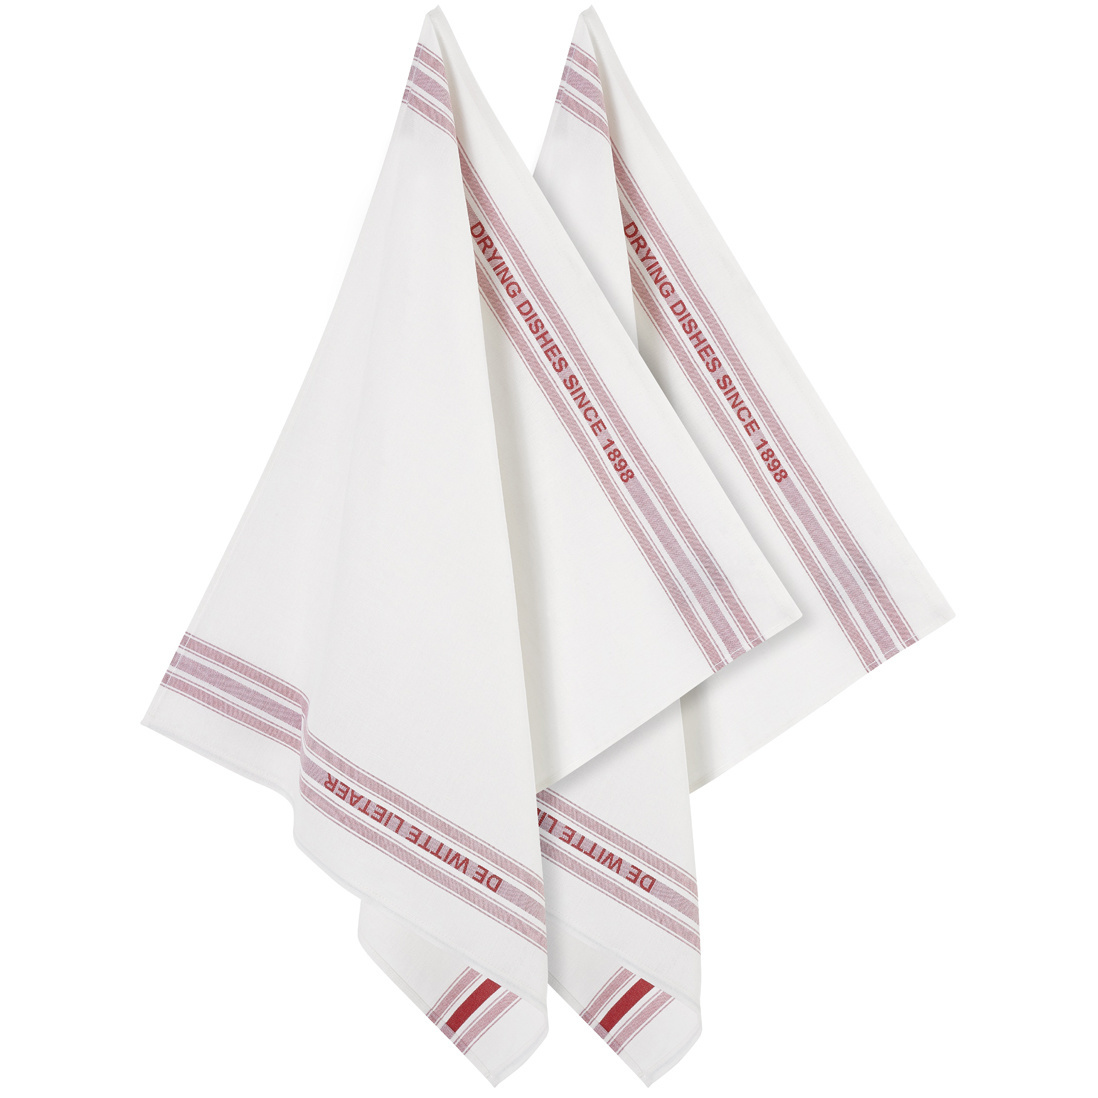 De Witte Lietaer Tea towel Dish, Red - 2 pieces - 65 x 70 cm - Cotton/Linen